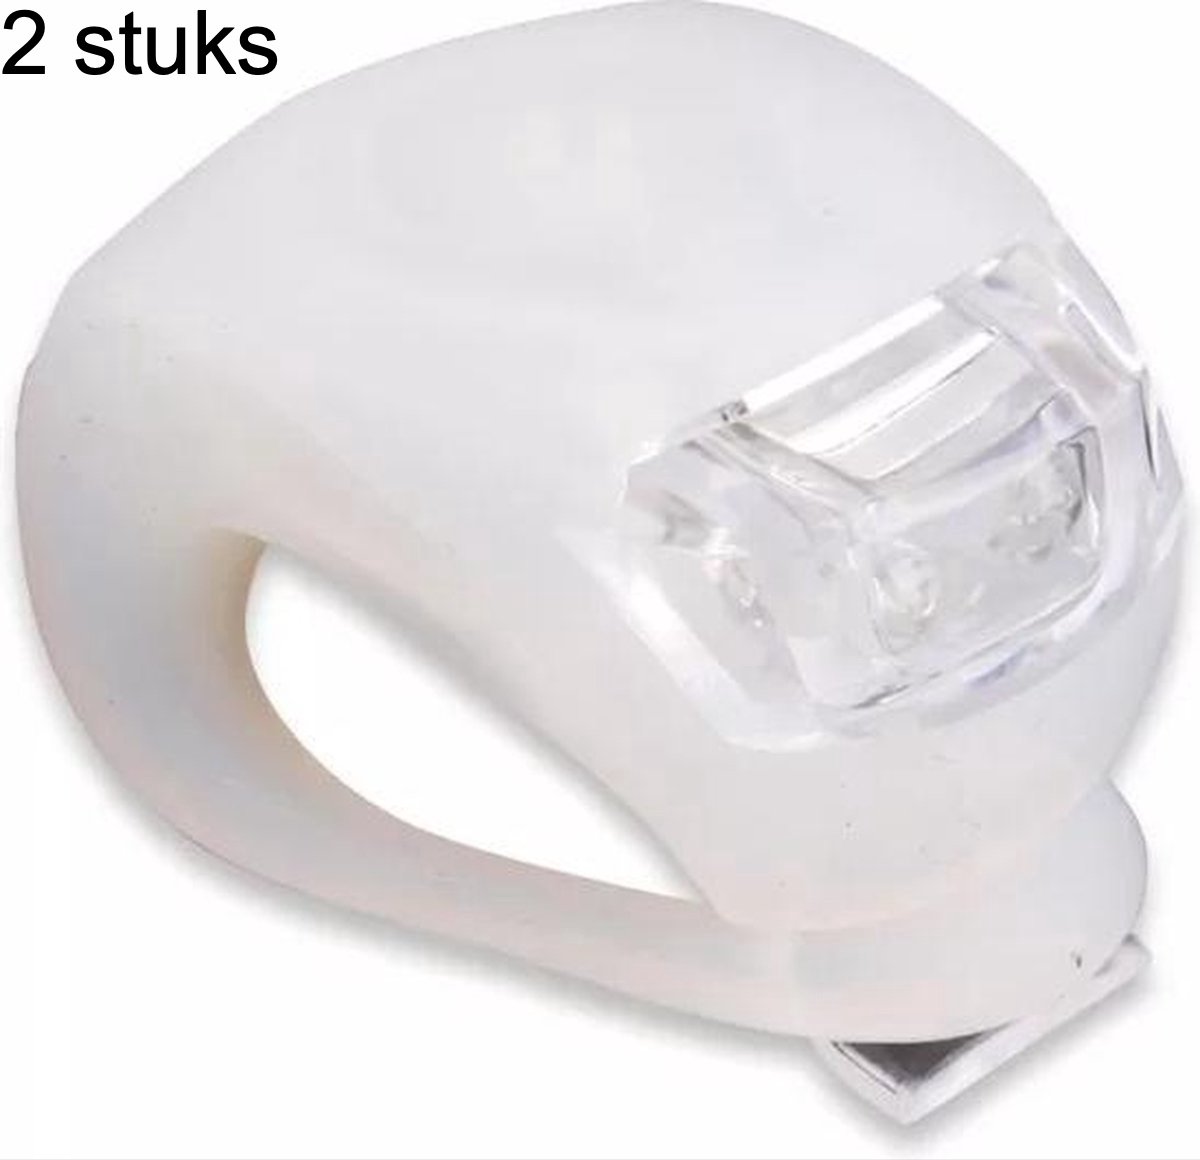 CHPN - Fietslampje - LED-Fietslamp - Waterdicht - Fietsverlichting - Wit lampje - Voorlicht fiets - Waterproof - Universeel - Wit lampje